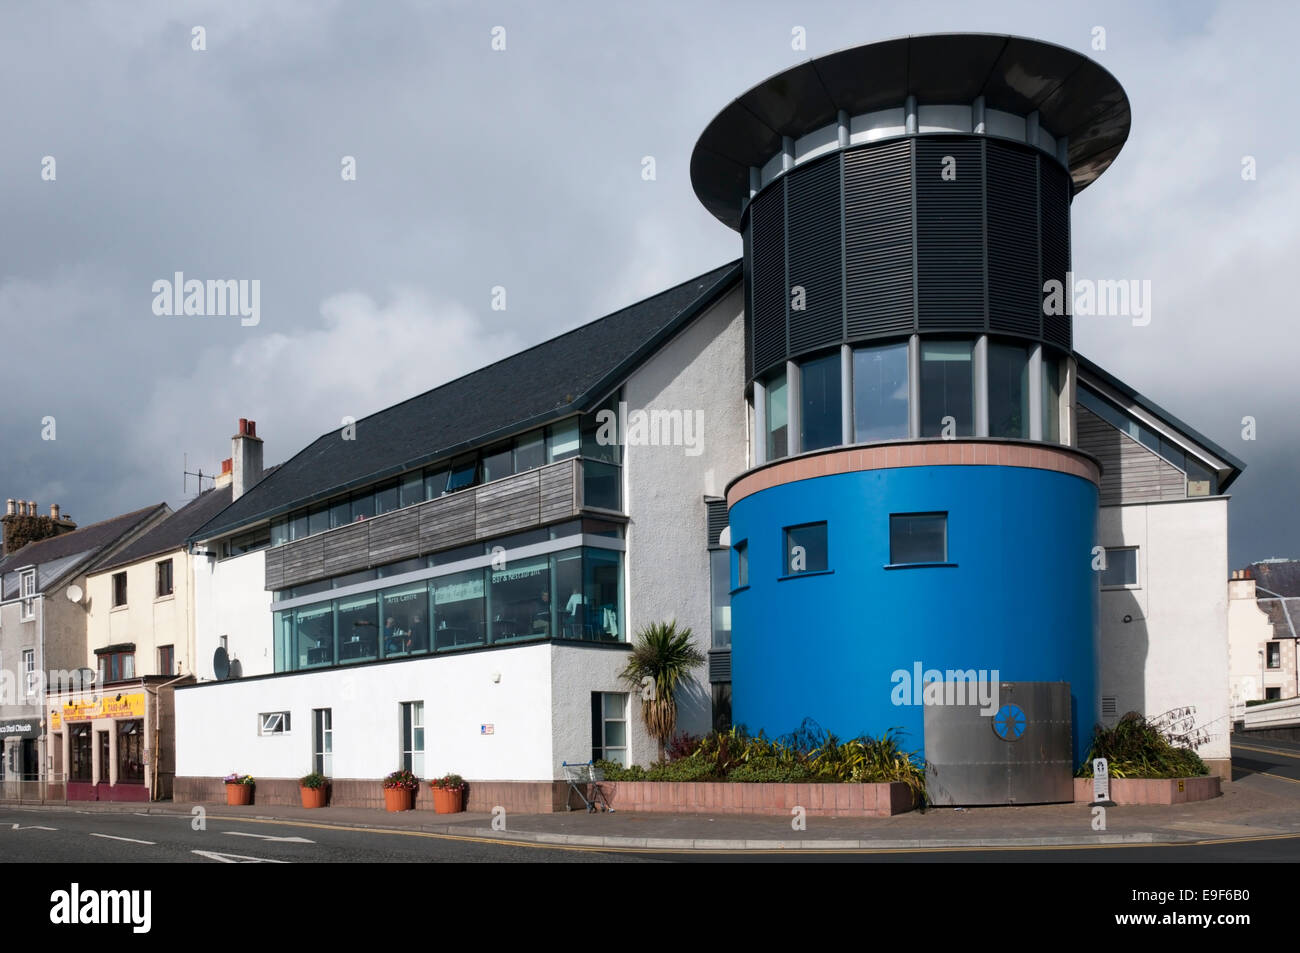 L'an Lanntair Arts Centre à un Stornoway, Isle Of Lewis. Banque D'Images